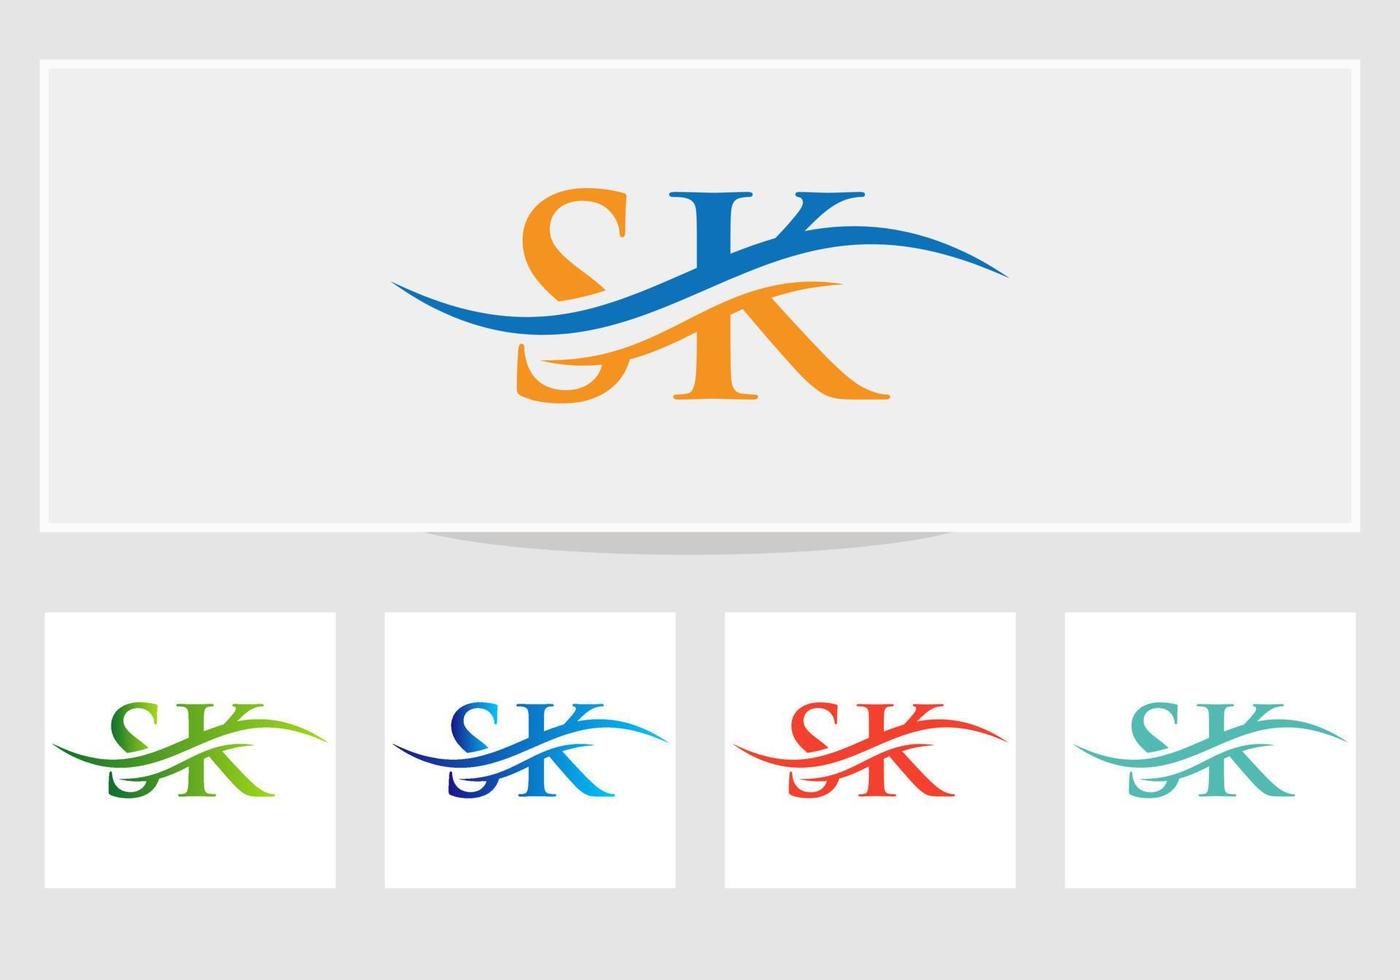 SK logo. Monogram letter SK logo design Vector. SK letter logo design with modern trendy vector